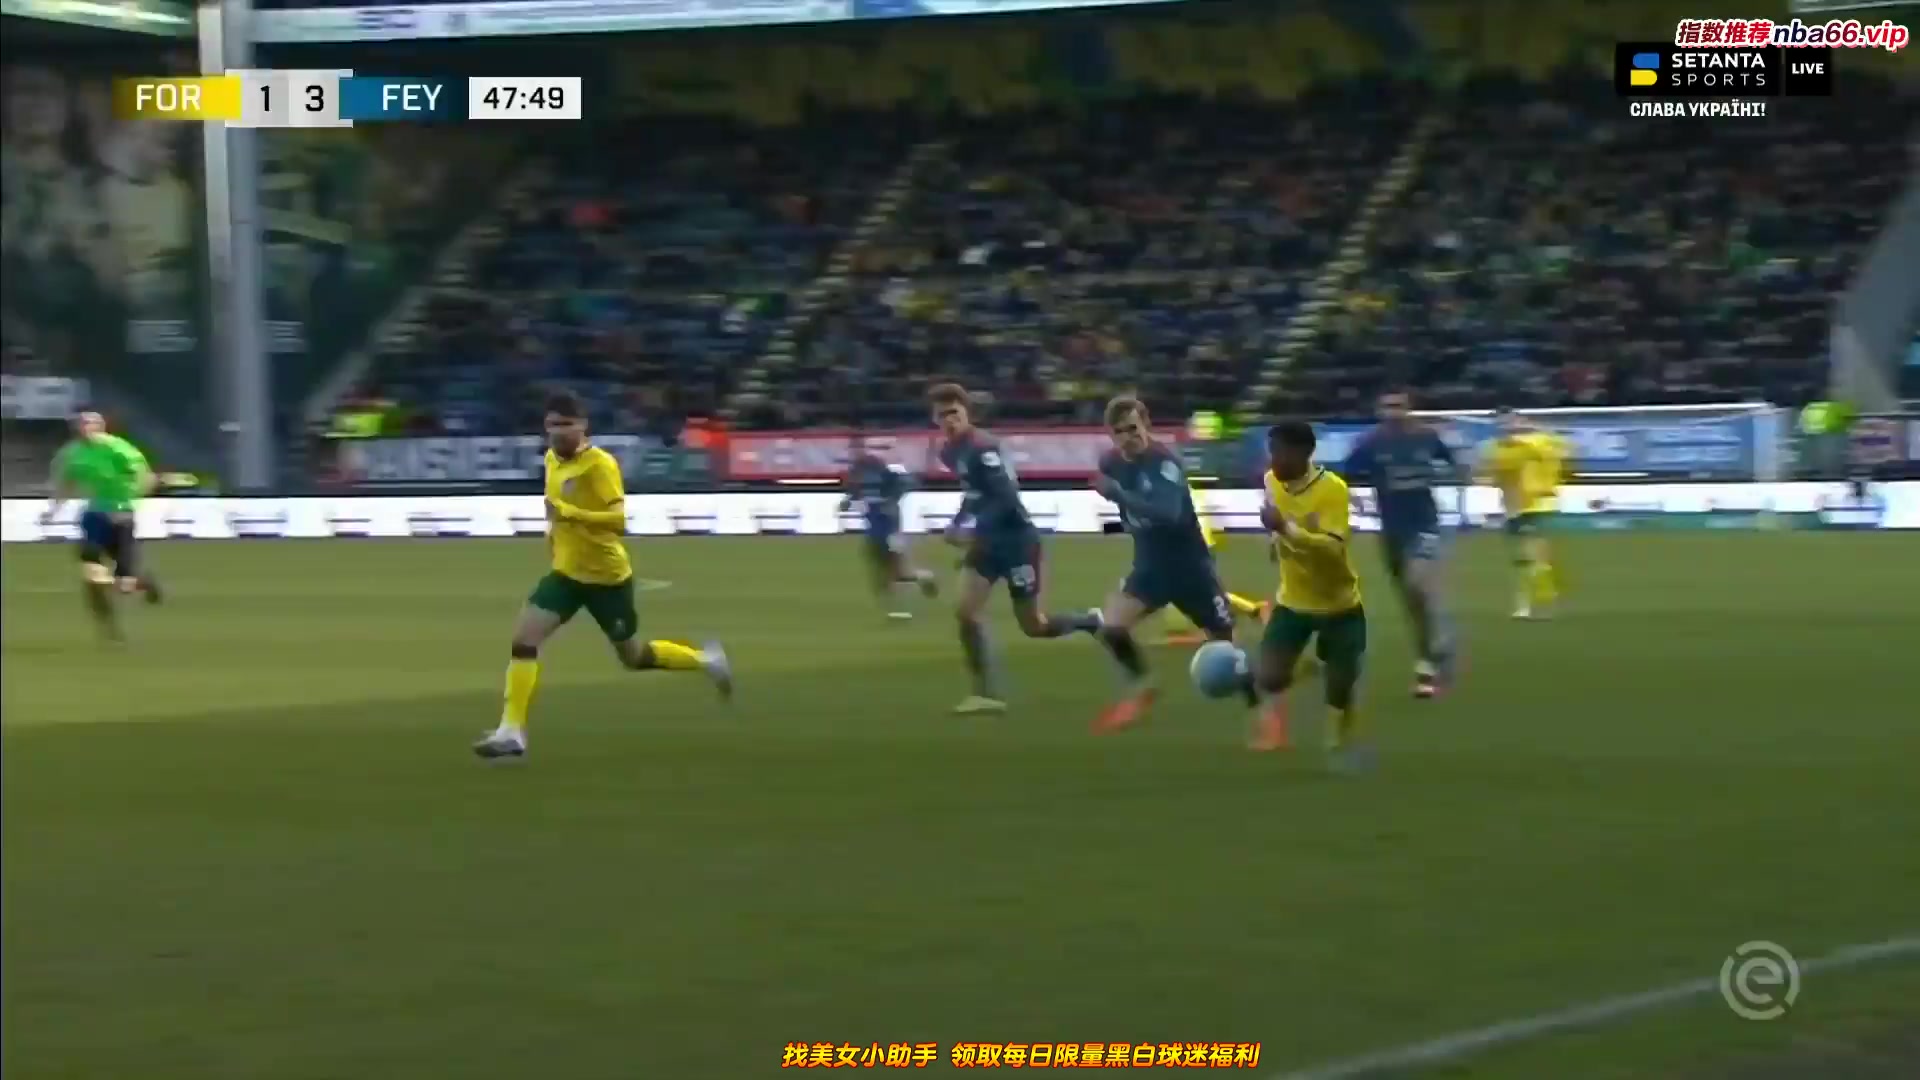 HOL D1 Fortuna Sittard Vs Feyenoord  Goal in 49 min, Score 1:3